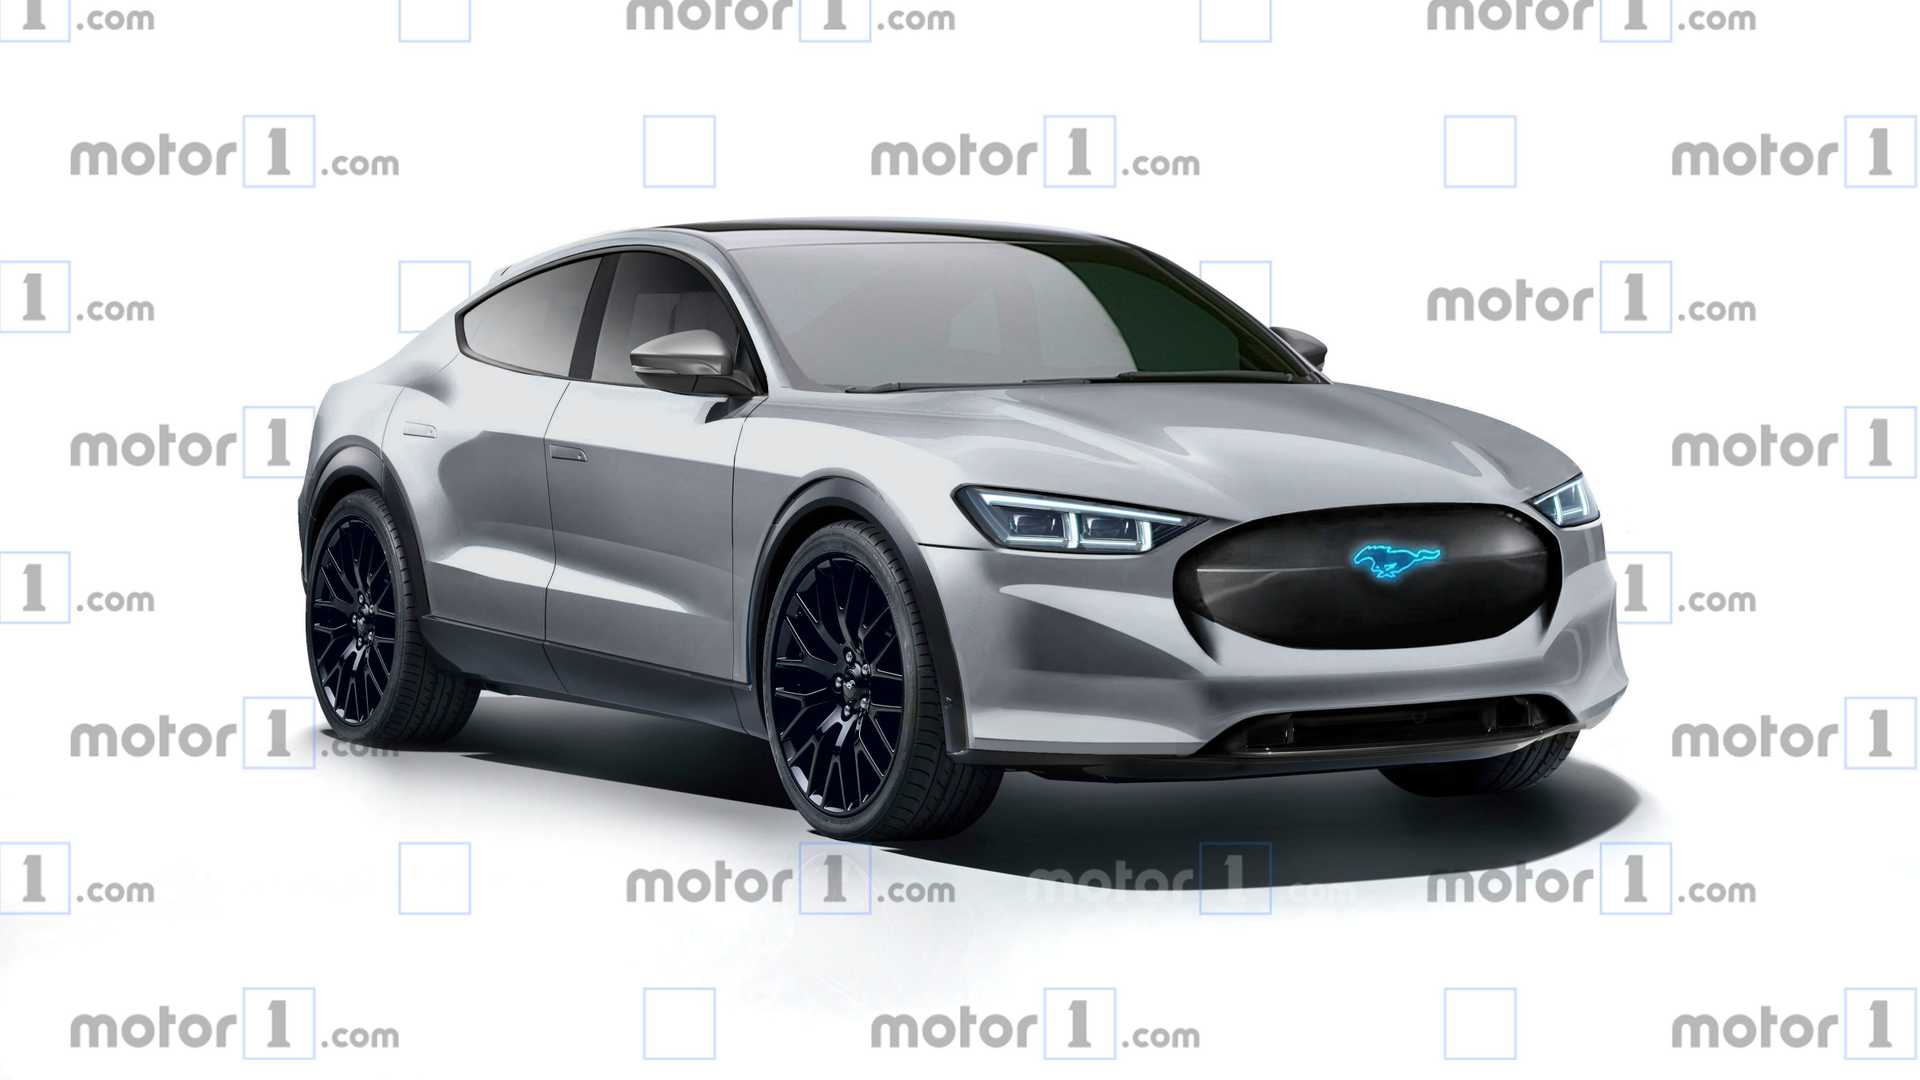 Электрокроссовер ford mustang mach-e 2020, фото цена характеристики